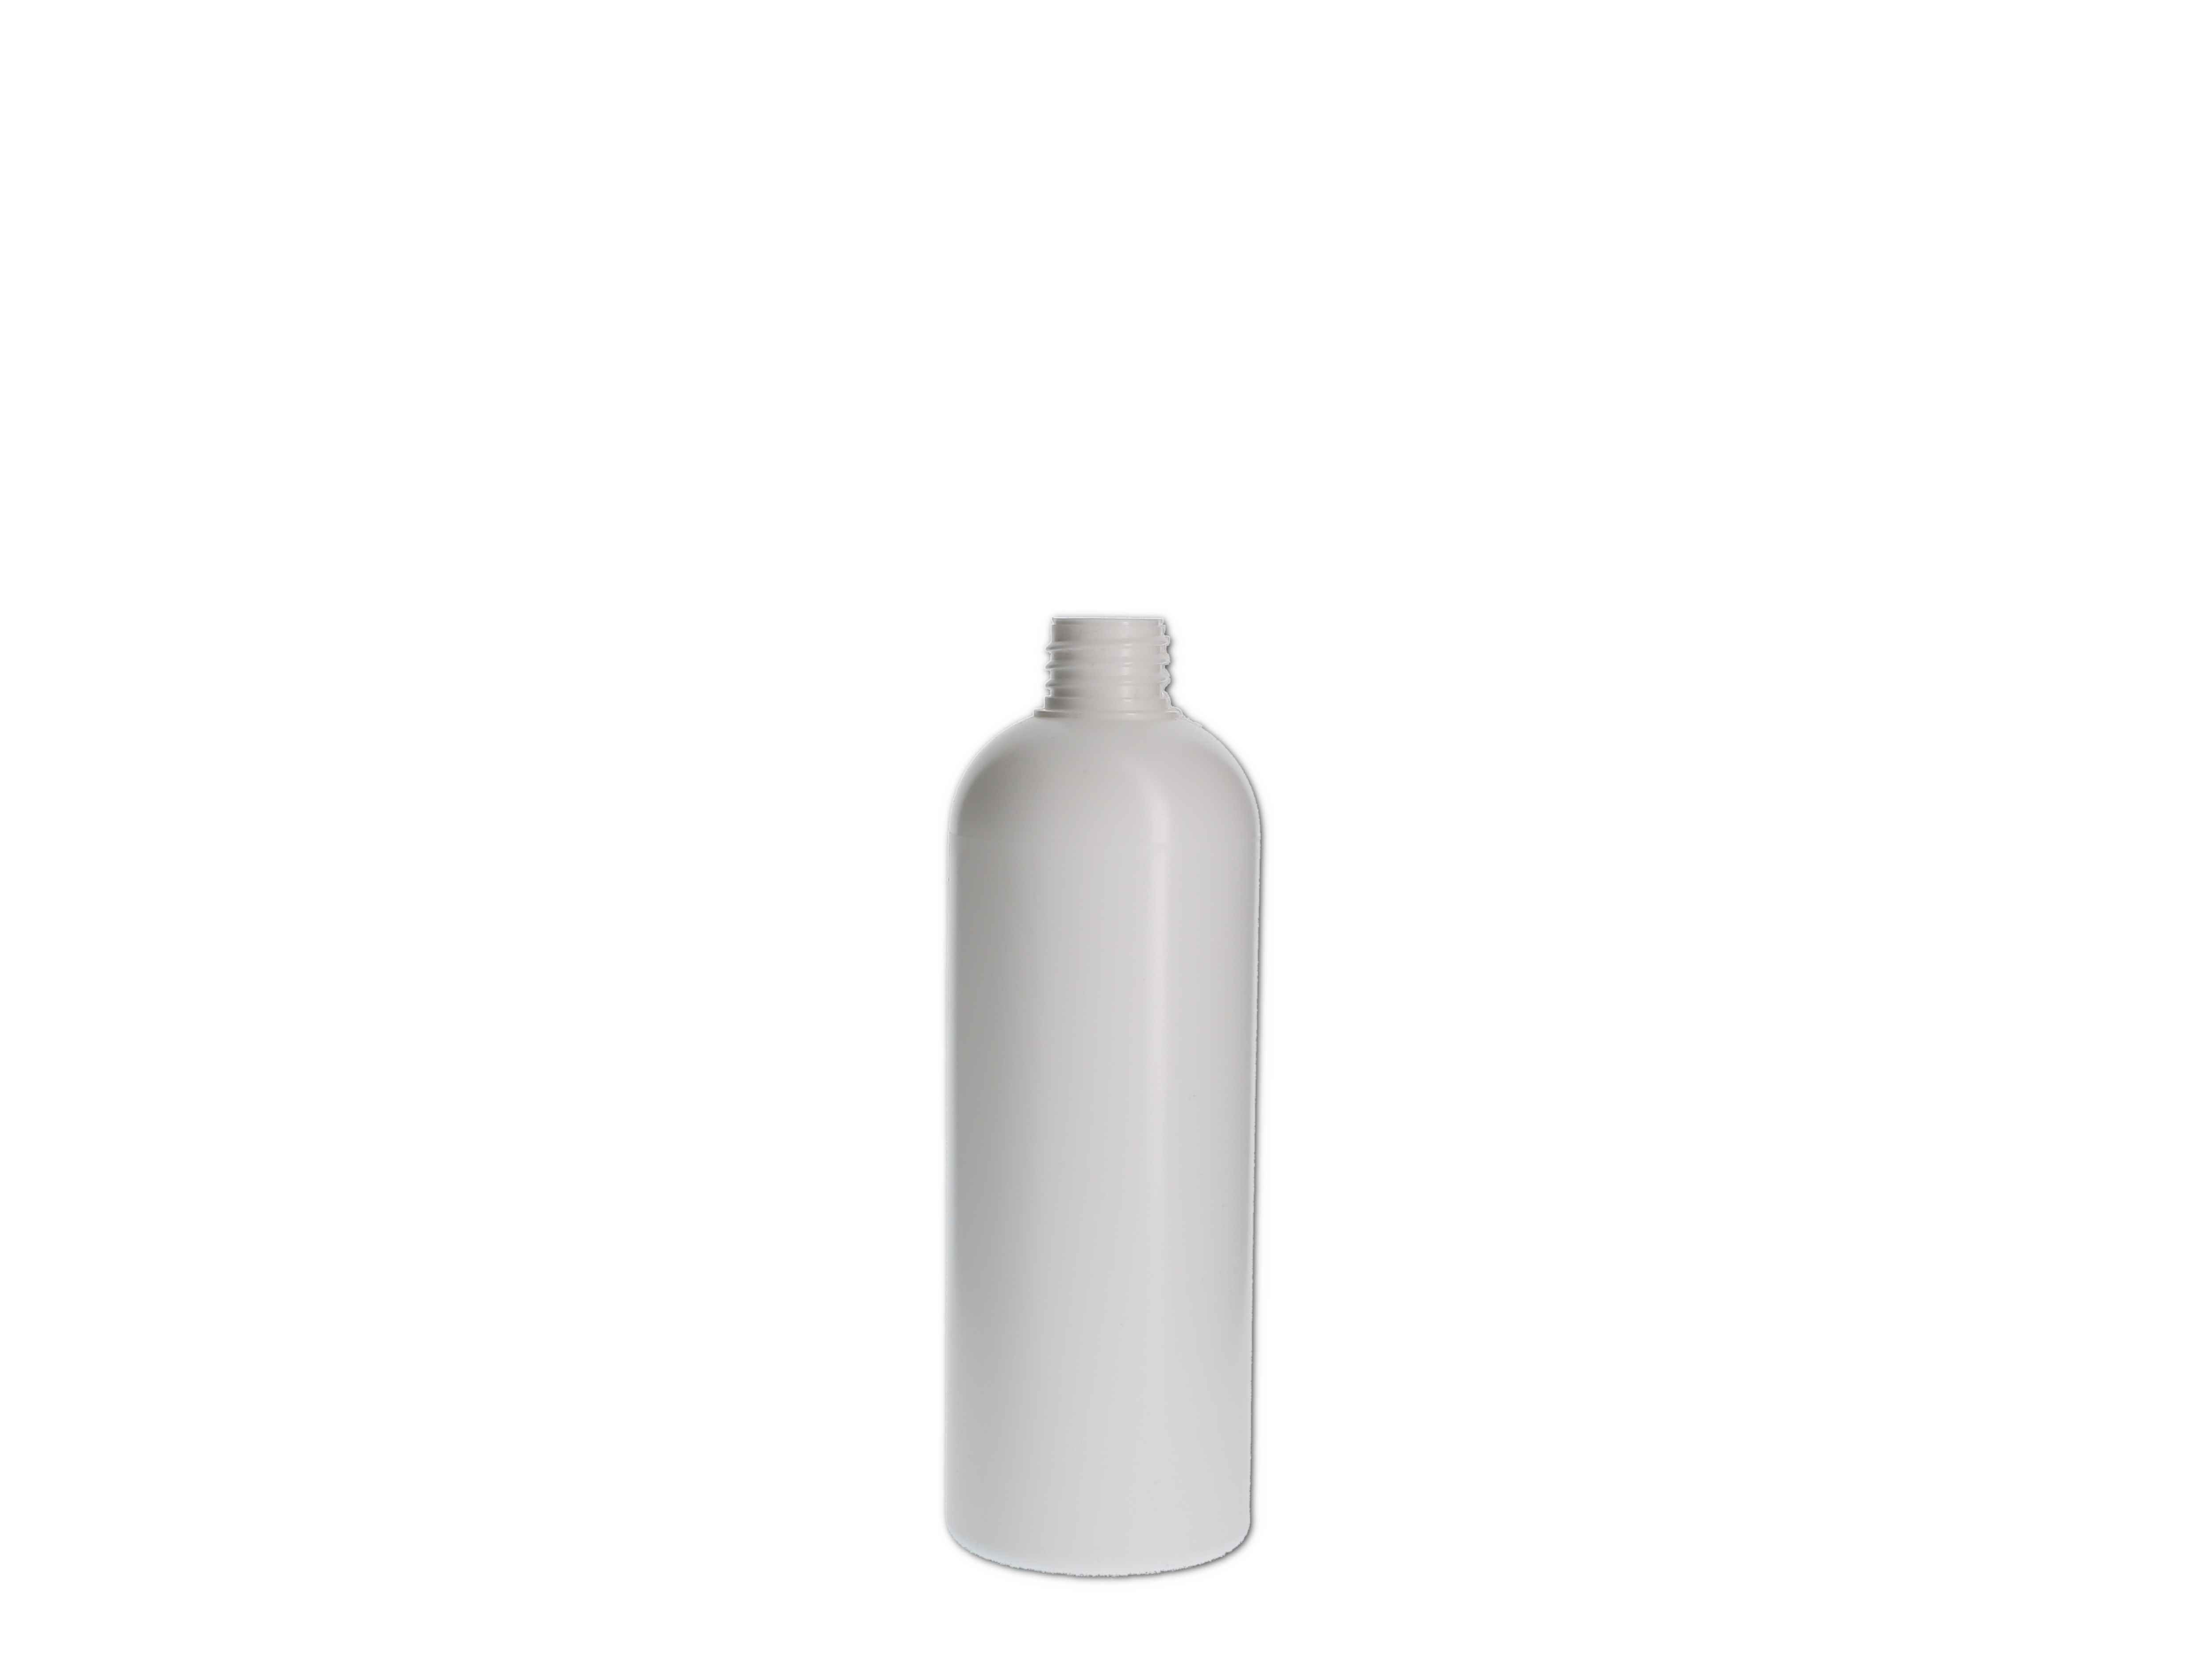    Kosmetikflasche, Kunststoff weiß, rund 200ml